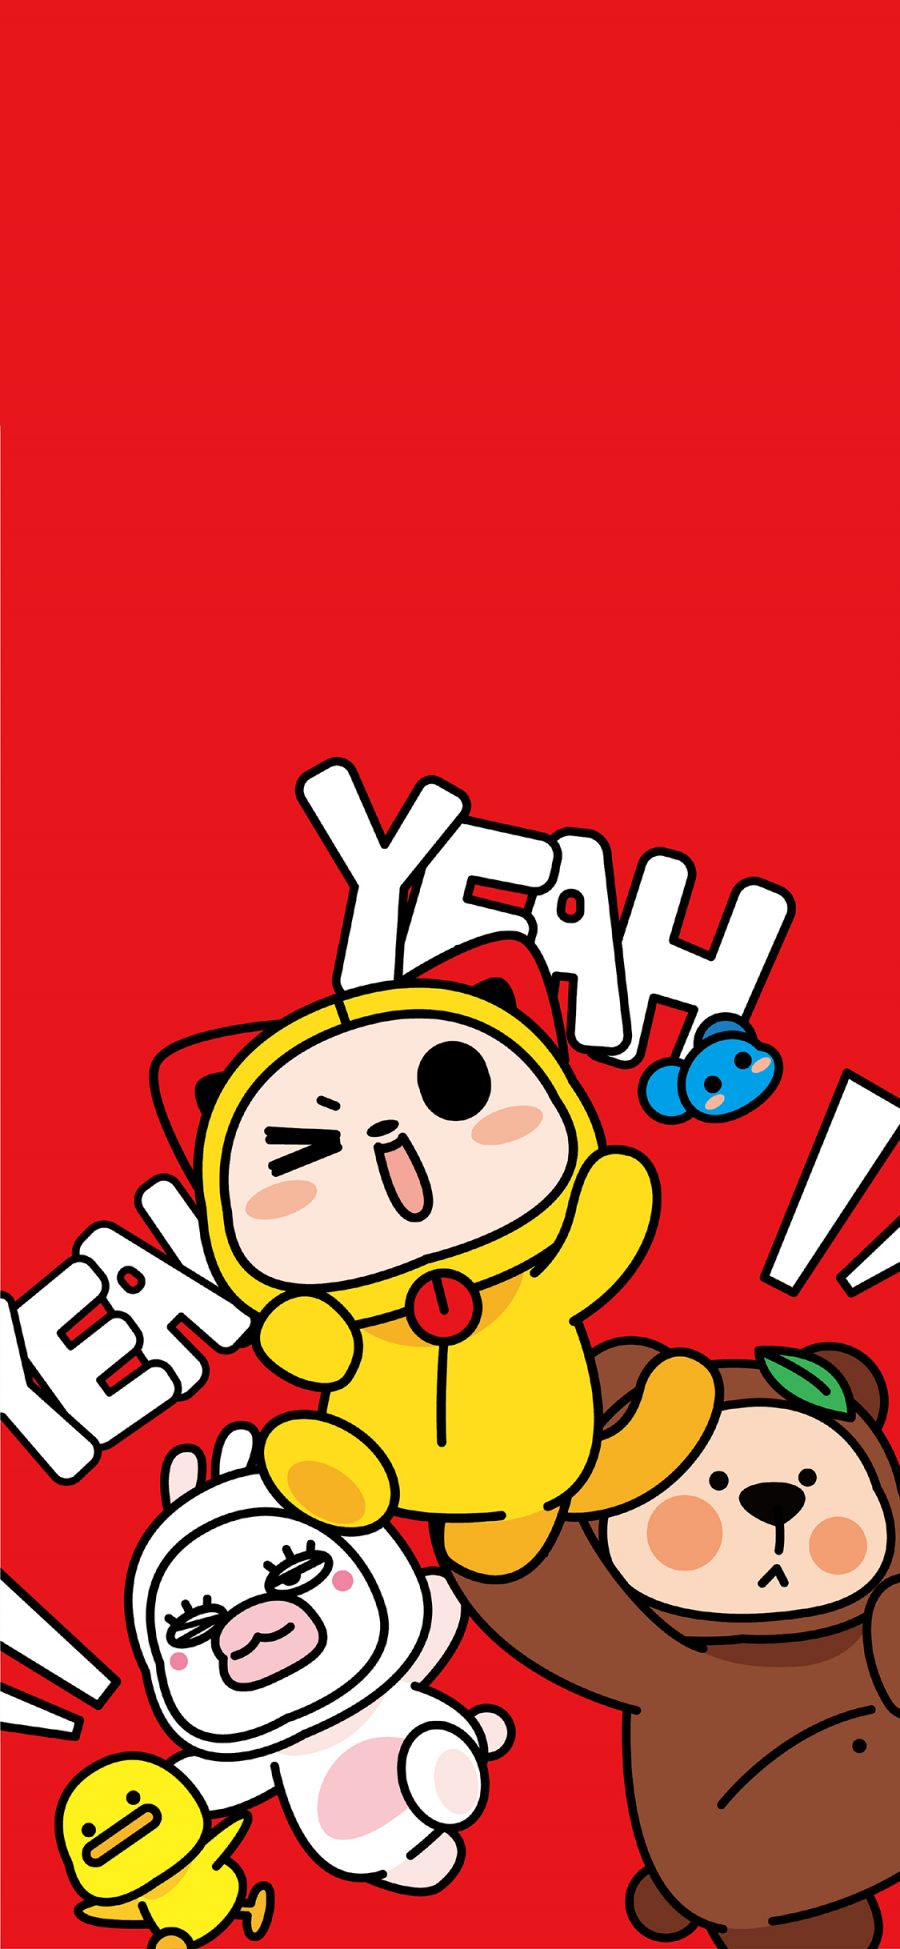 [2436×1125]夏萌猫 红色 欢乐 yeah 卡通 苹果手机动漫壁纸图片